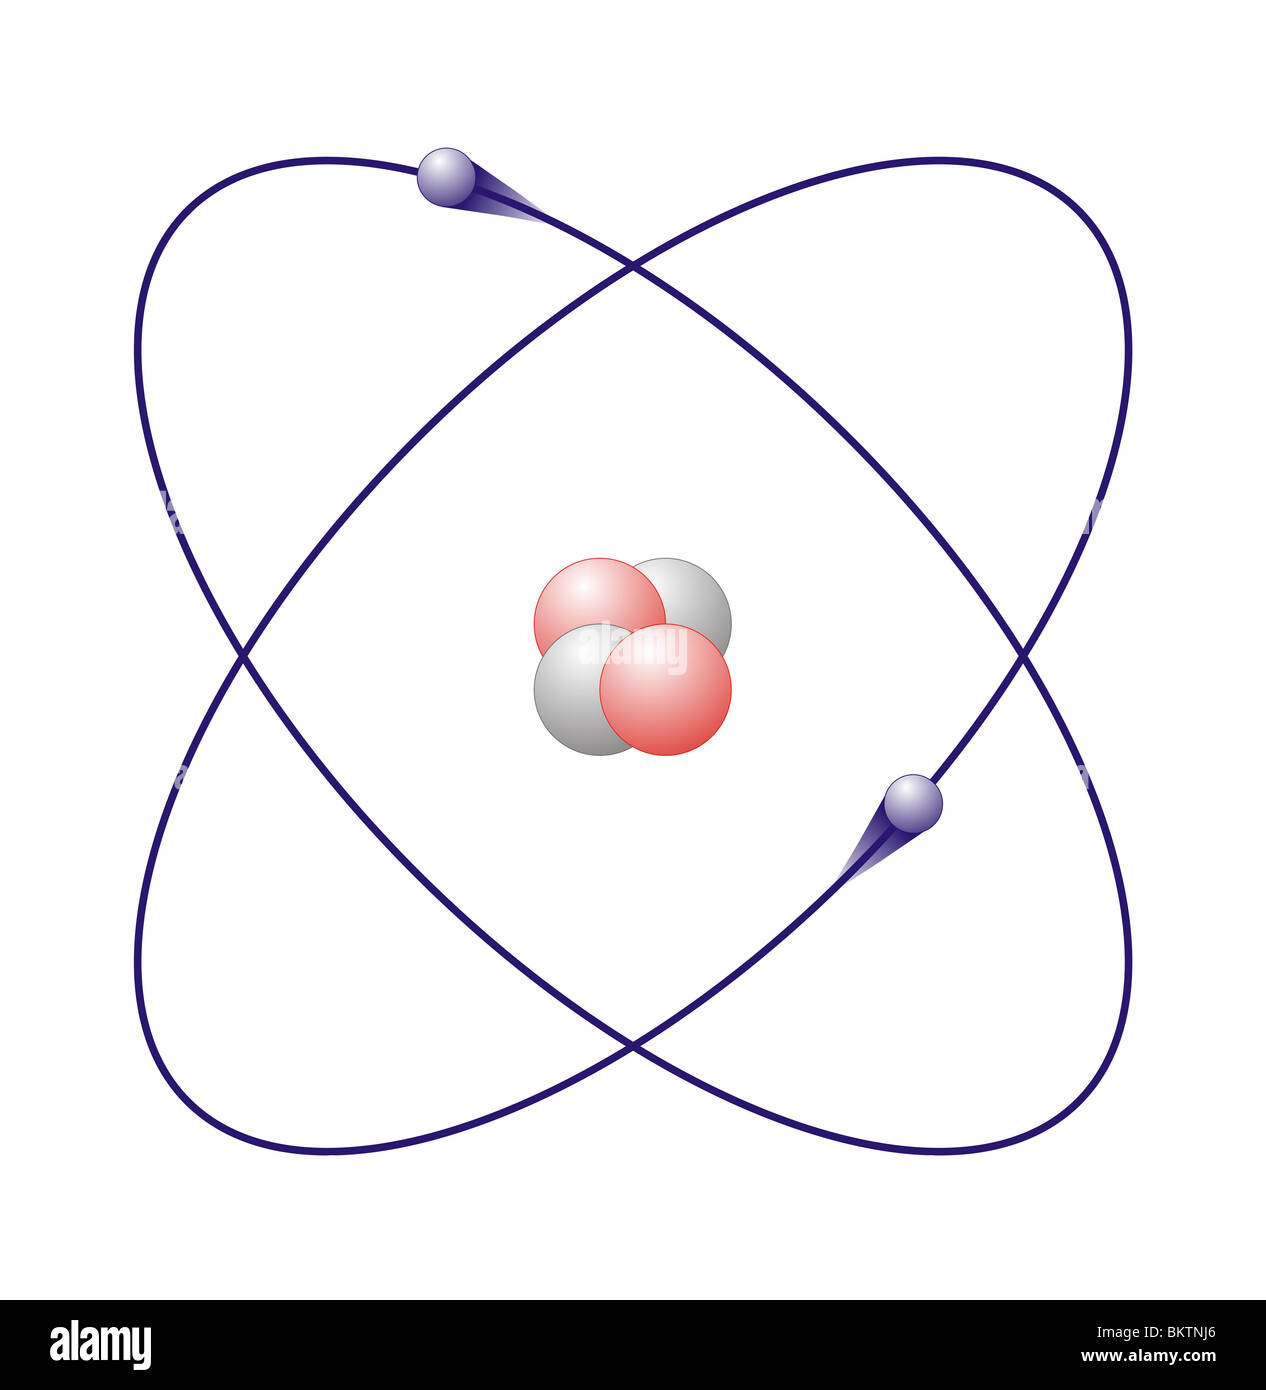 helium atom colorcode atomic nucleus red=proton, white=neutron ...